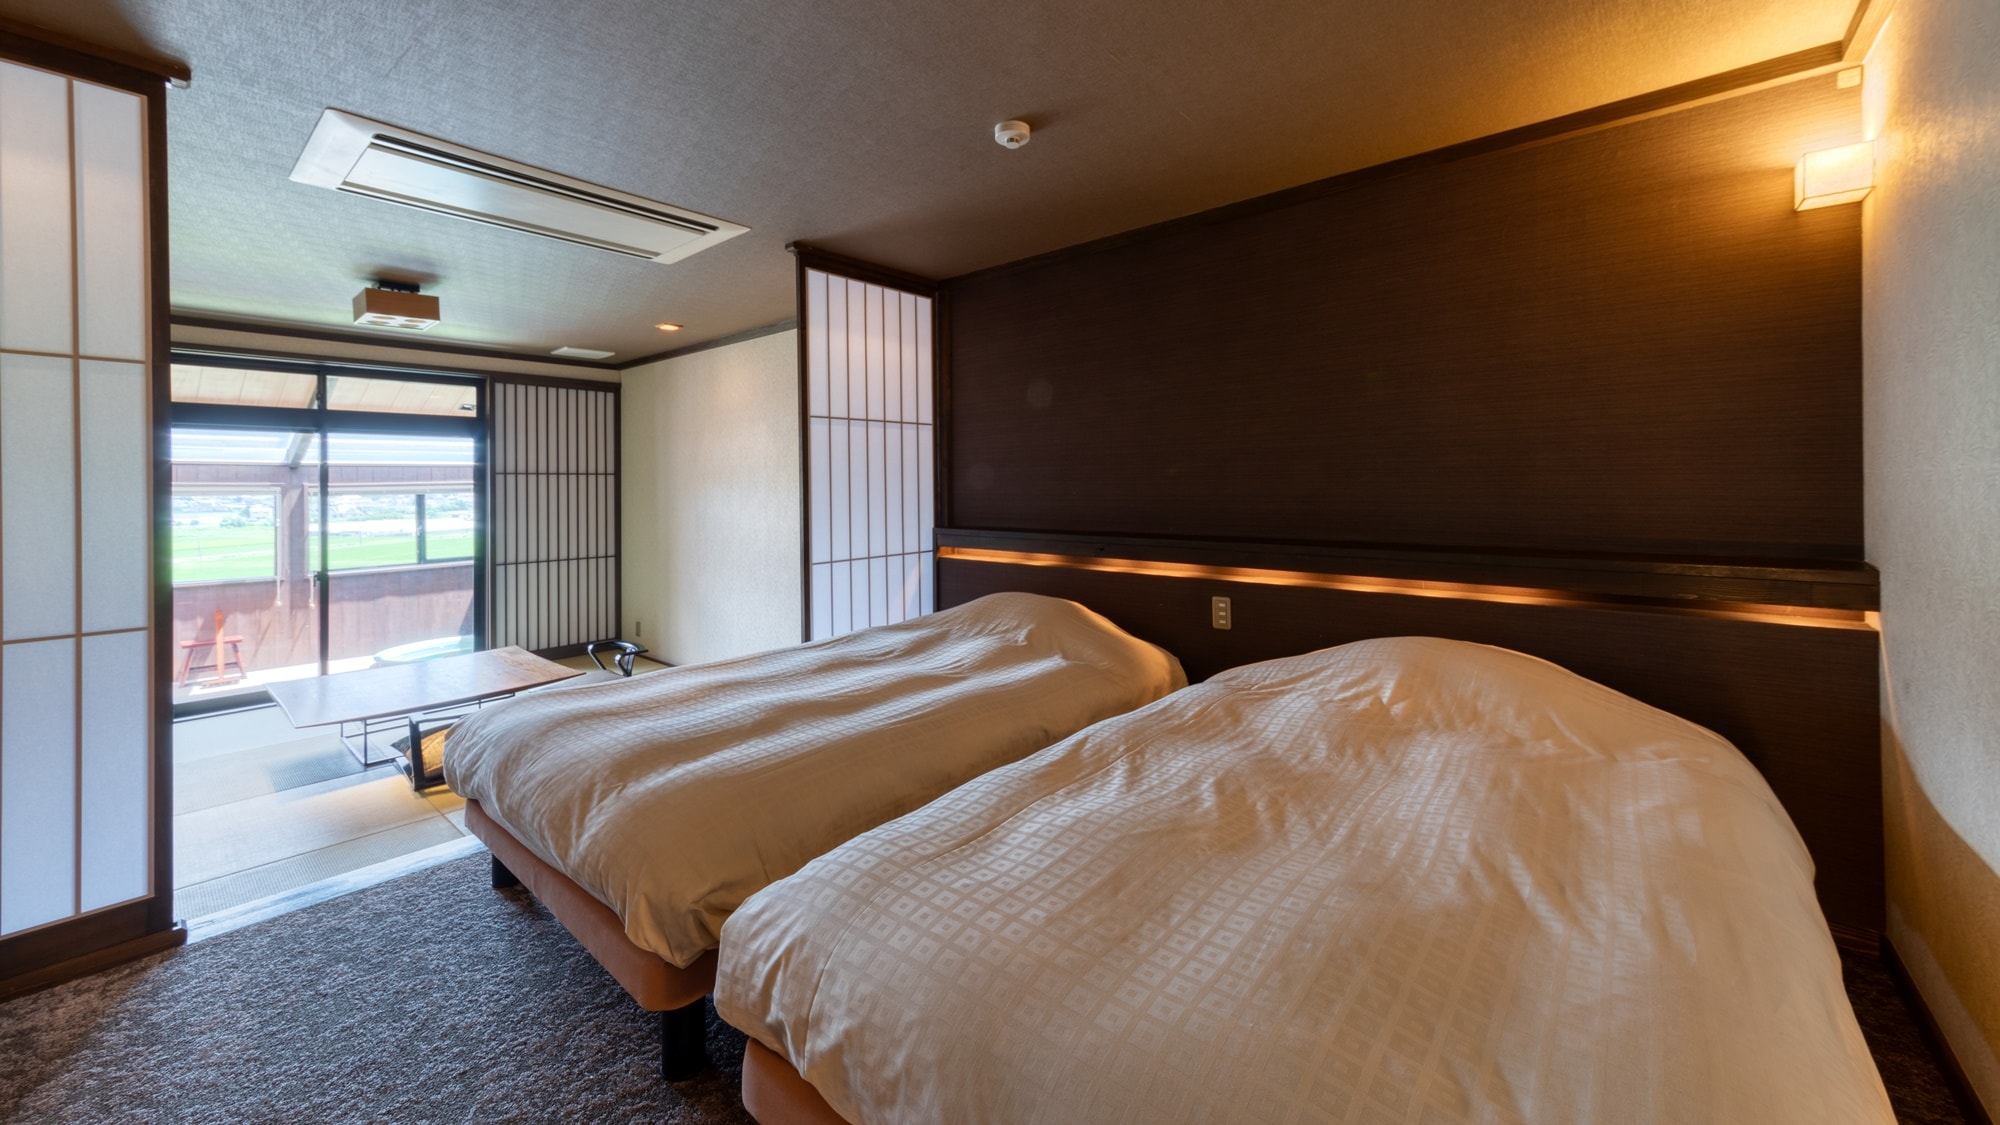 Kamar tamu dengan pemandangan rumah utama Lantai 2: Akisakura -cosmos-